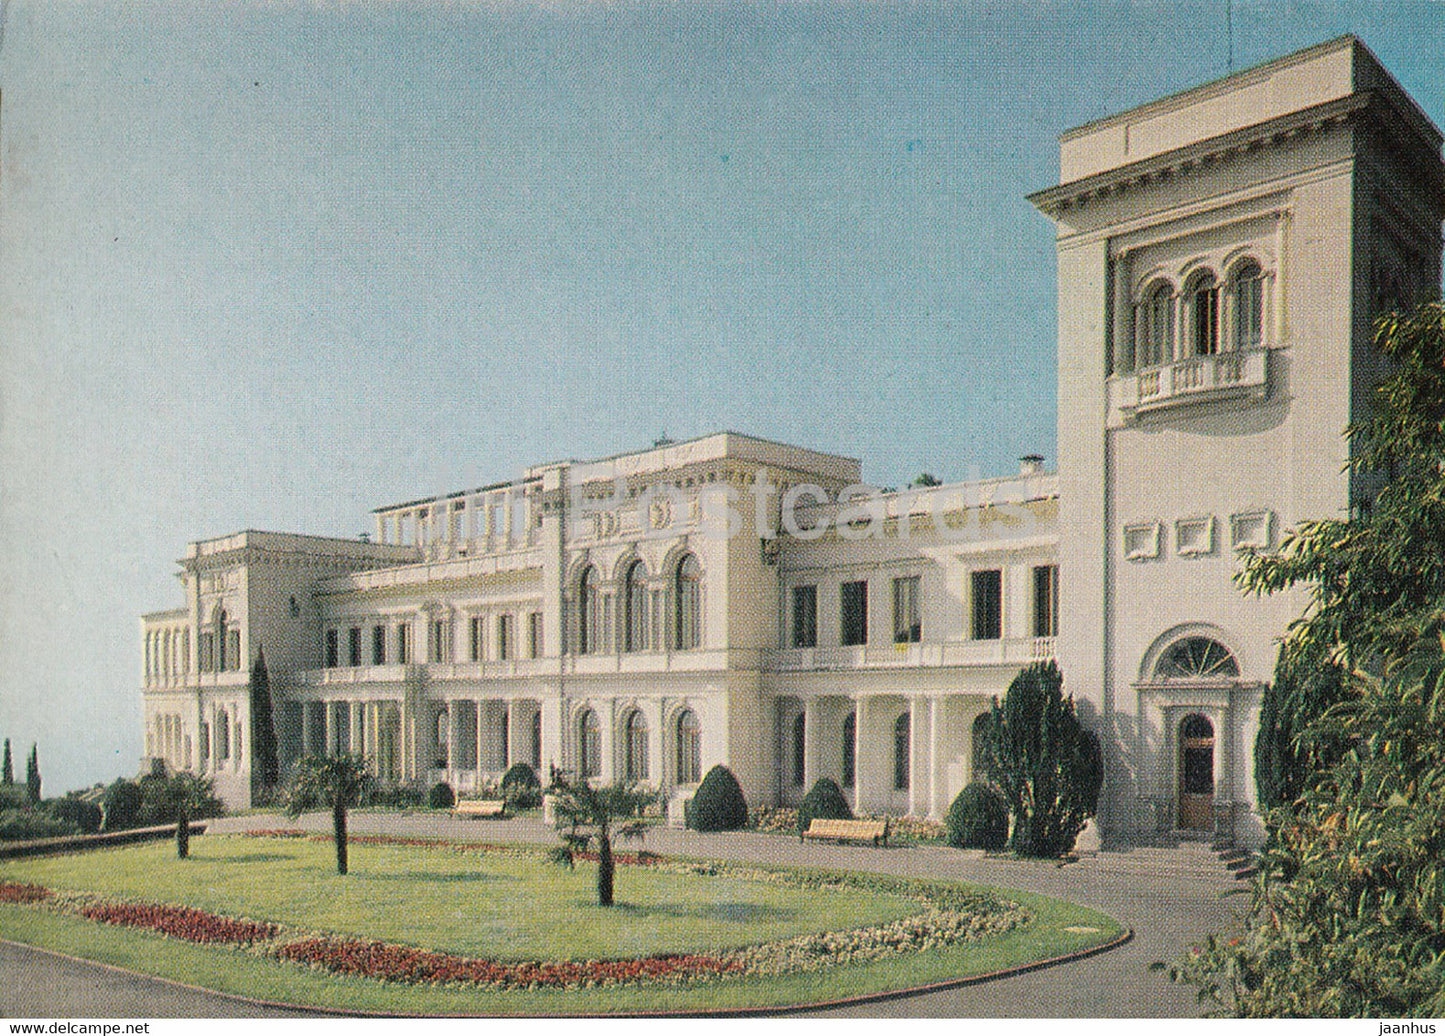 Crimea - Livadia Palace Museum - AVIA - postal stationery - 1975 - Ukraine USSR - unused - JH Postcards